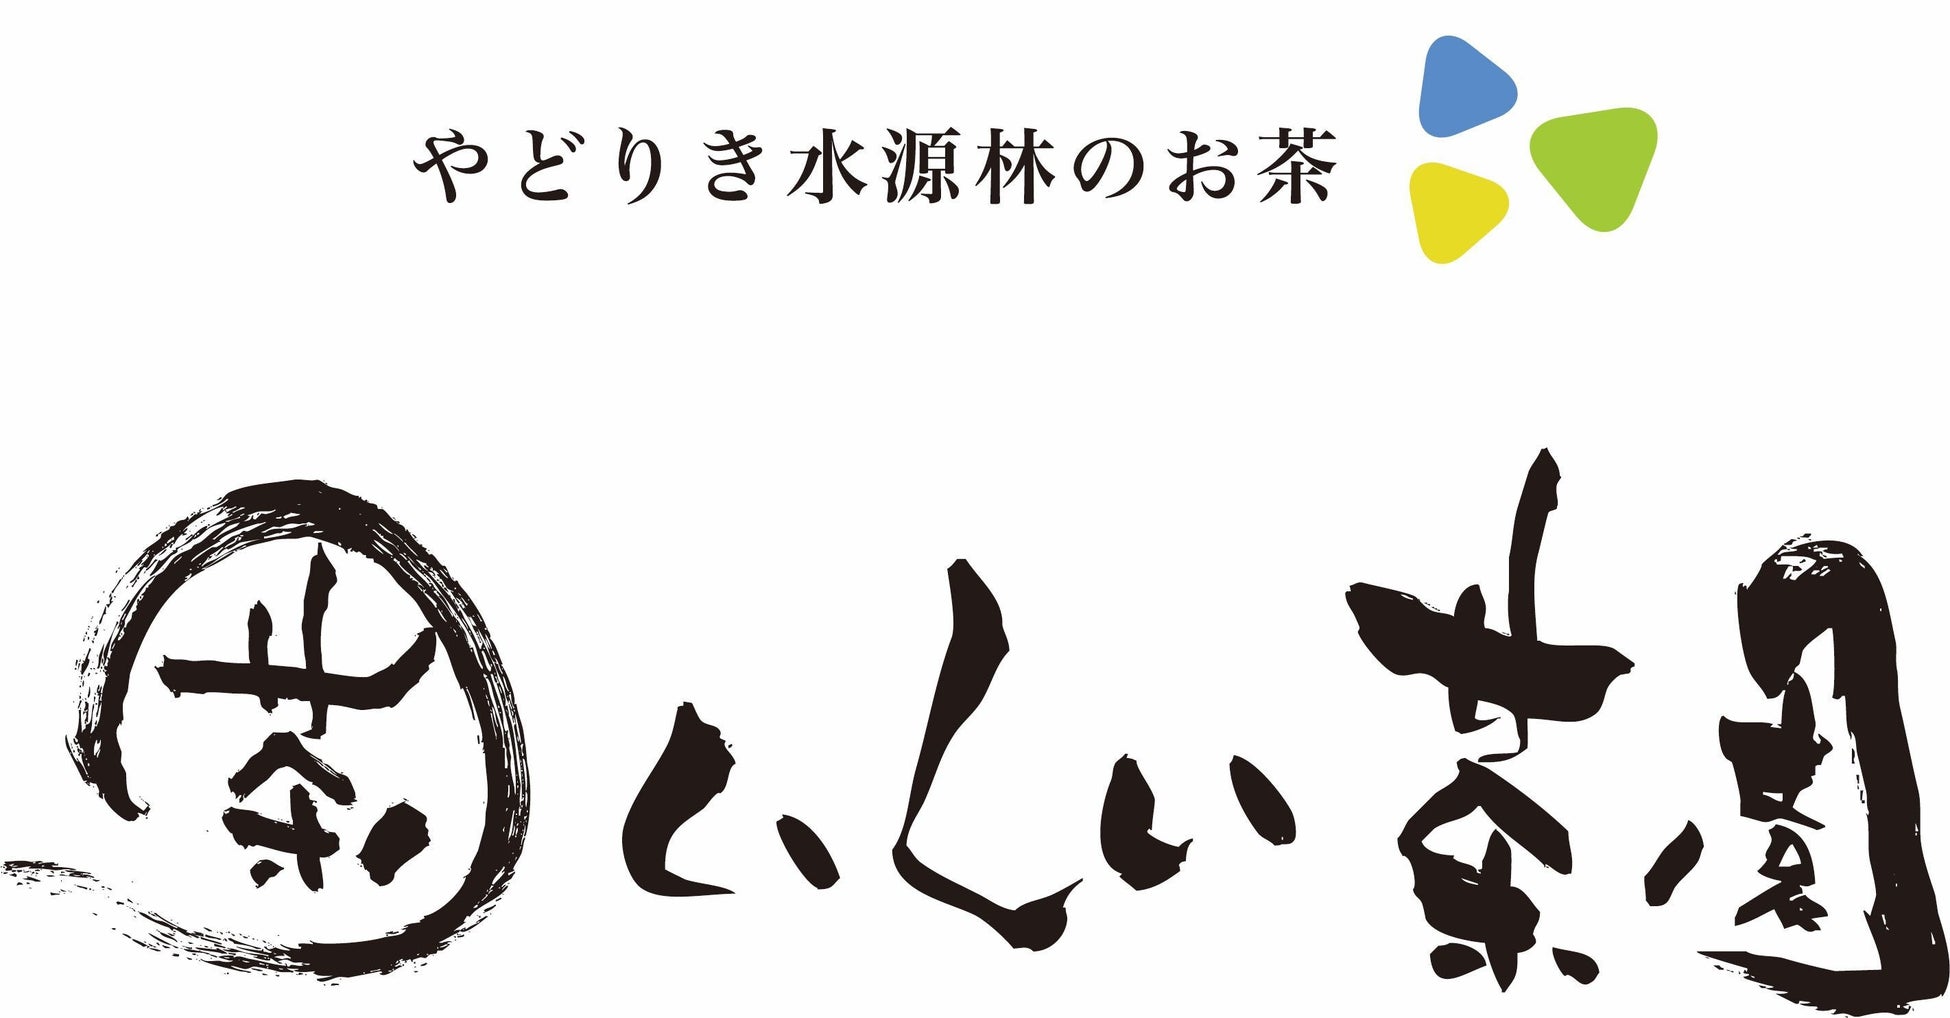 【茶園×web3】“日本の原風景”を100年先も。みんなのふるさとを創る”ぼくらの絵日記”プロジェクトのサブ画像6